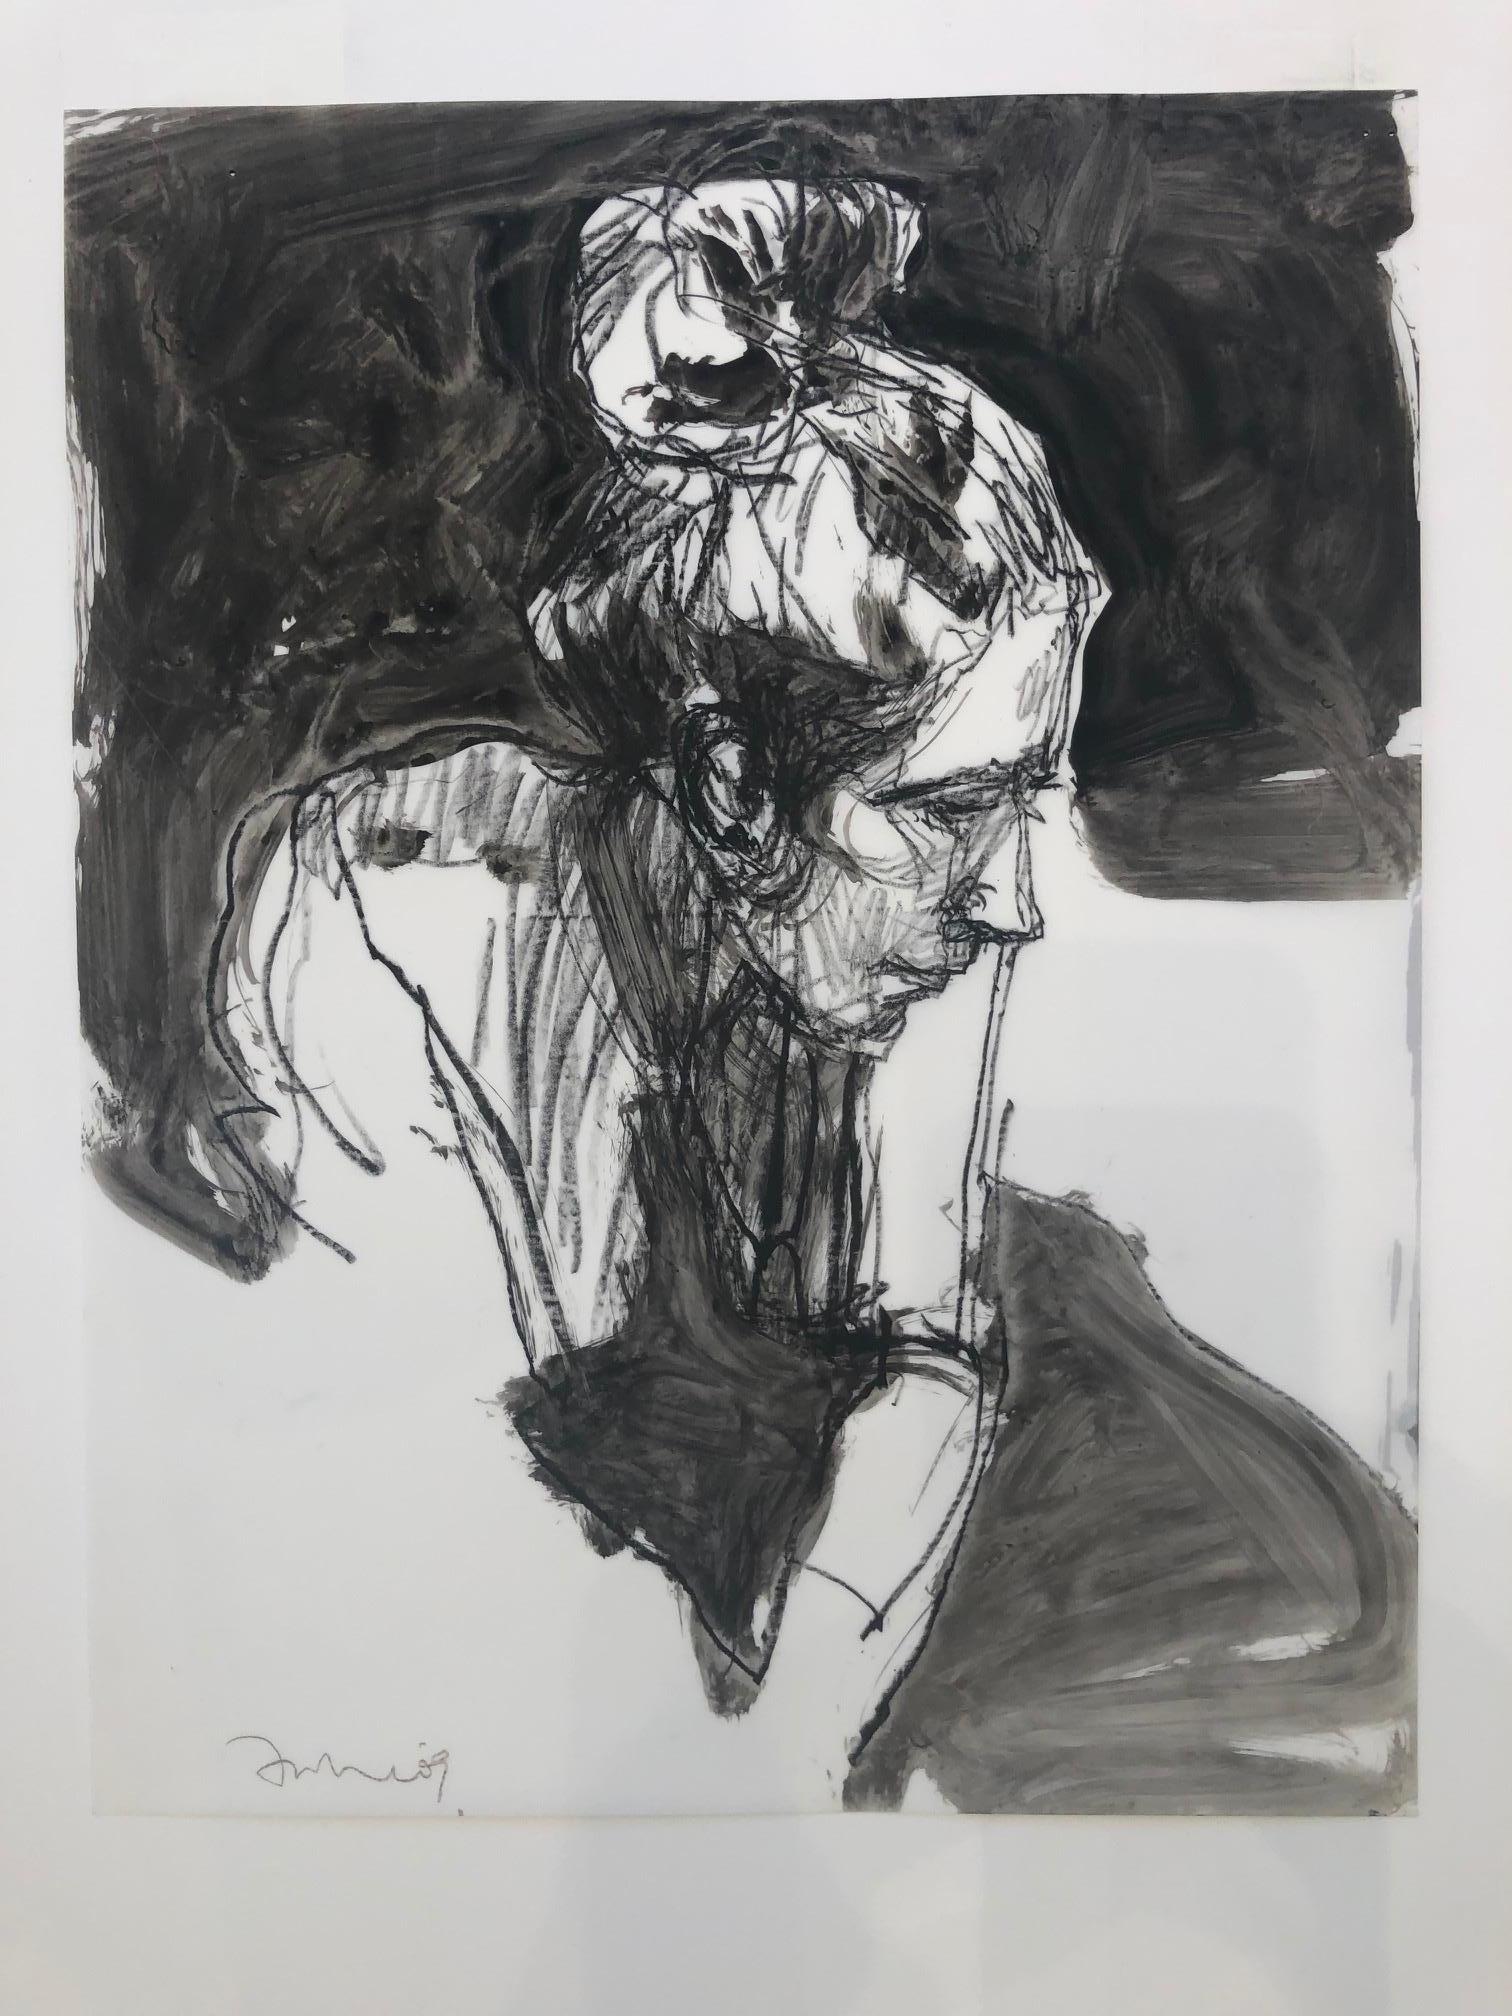 Motherhood Ahead / portrait head drawing, ink, pencil, watercolor, monochrome